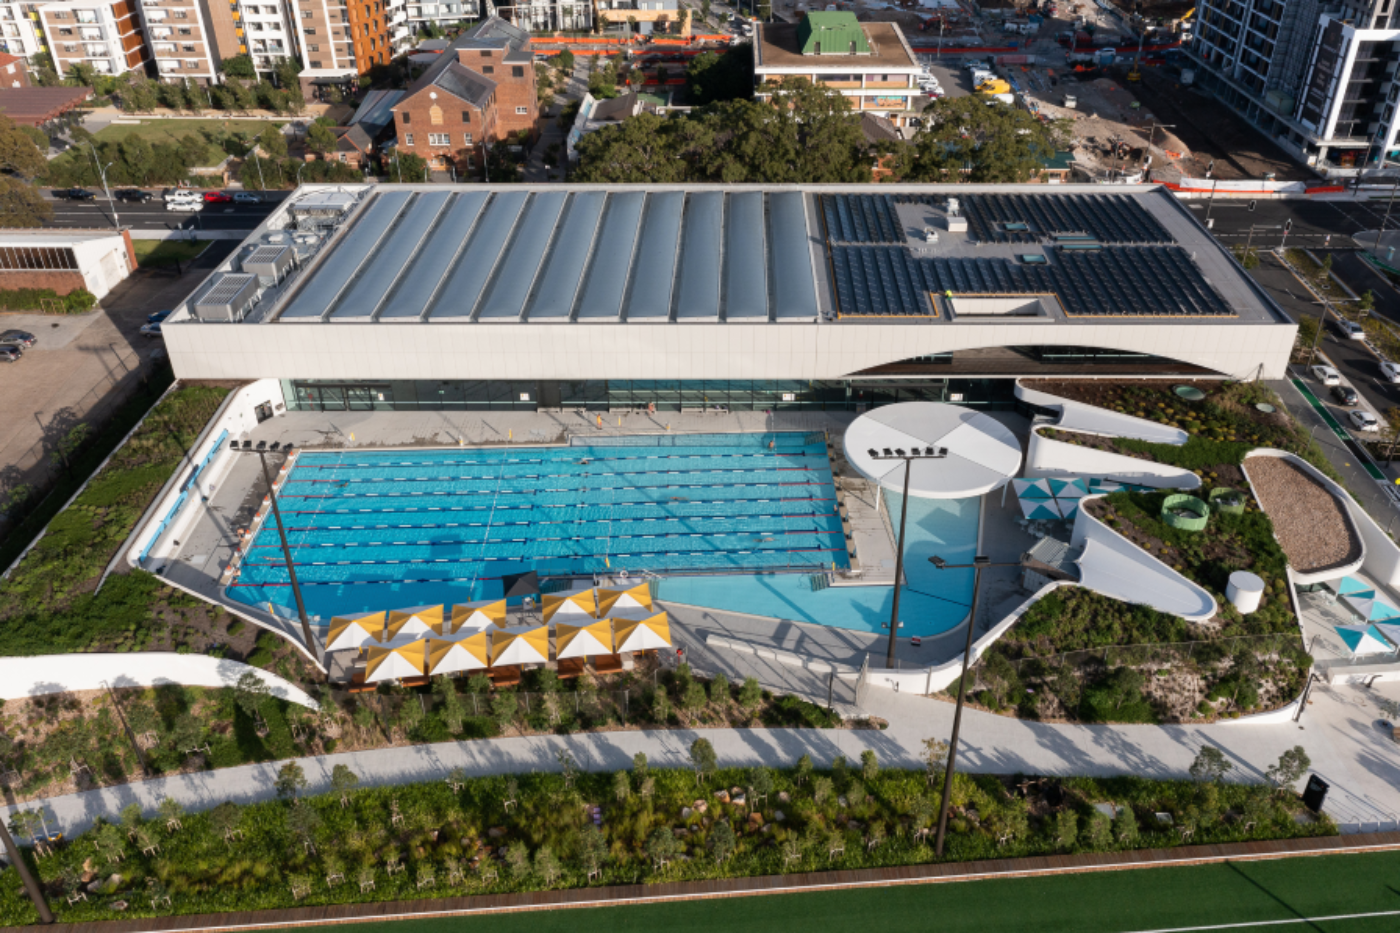 Gunyama Park Aquatic and Recreation Centre Image 1 Rodrigo Vargas exterior 46 69 Cassidy Miranda reduced